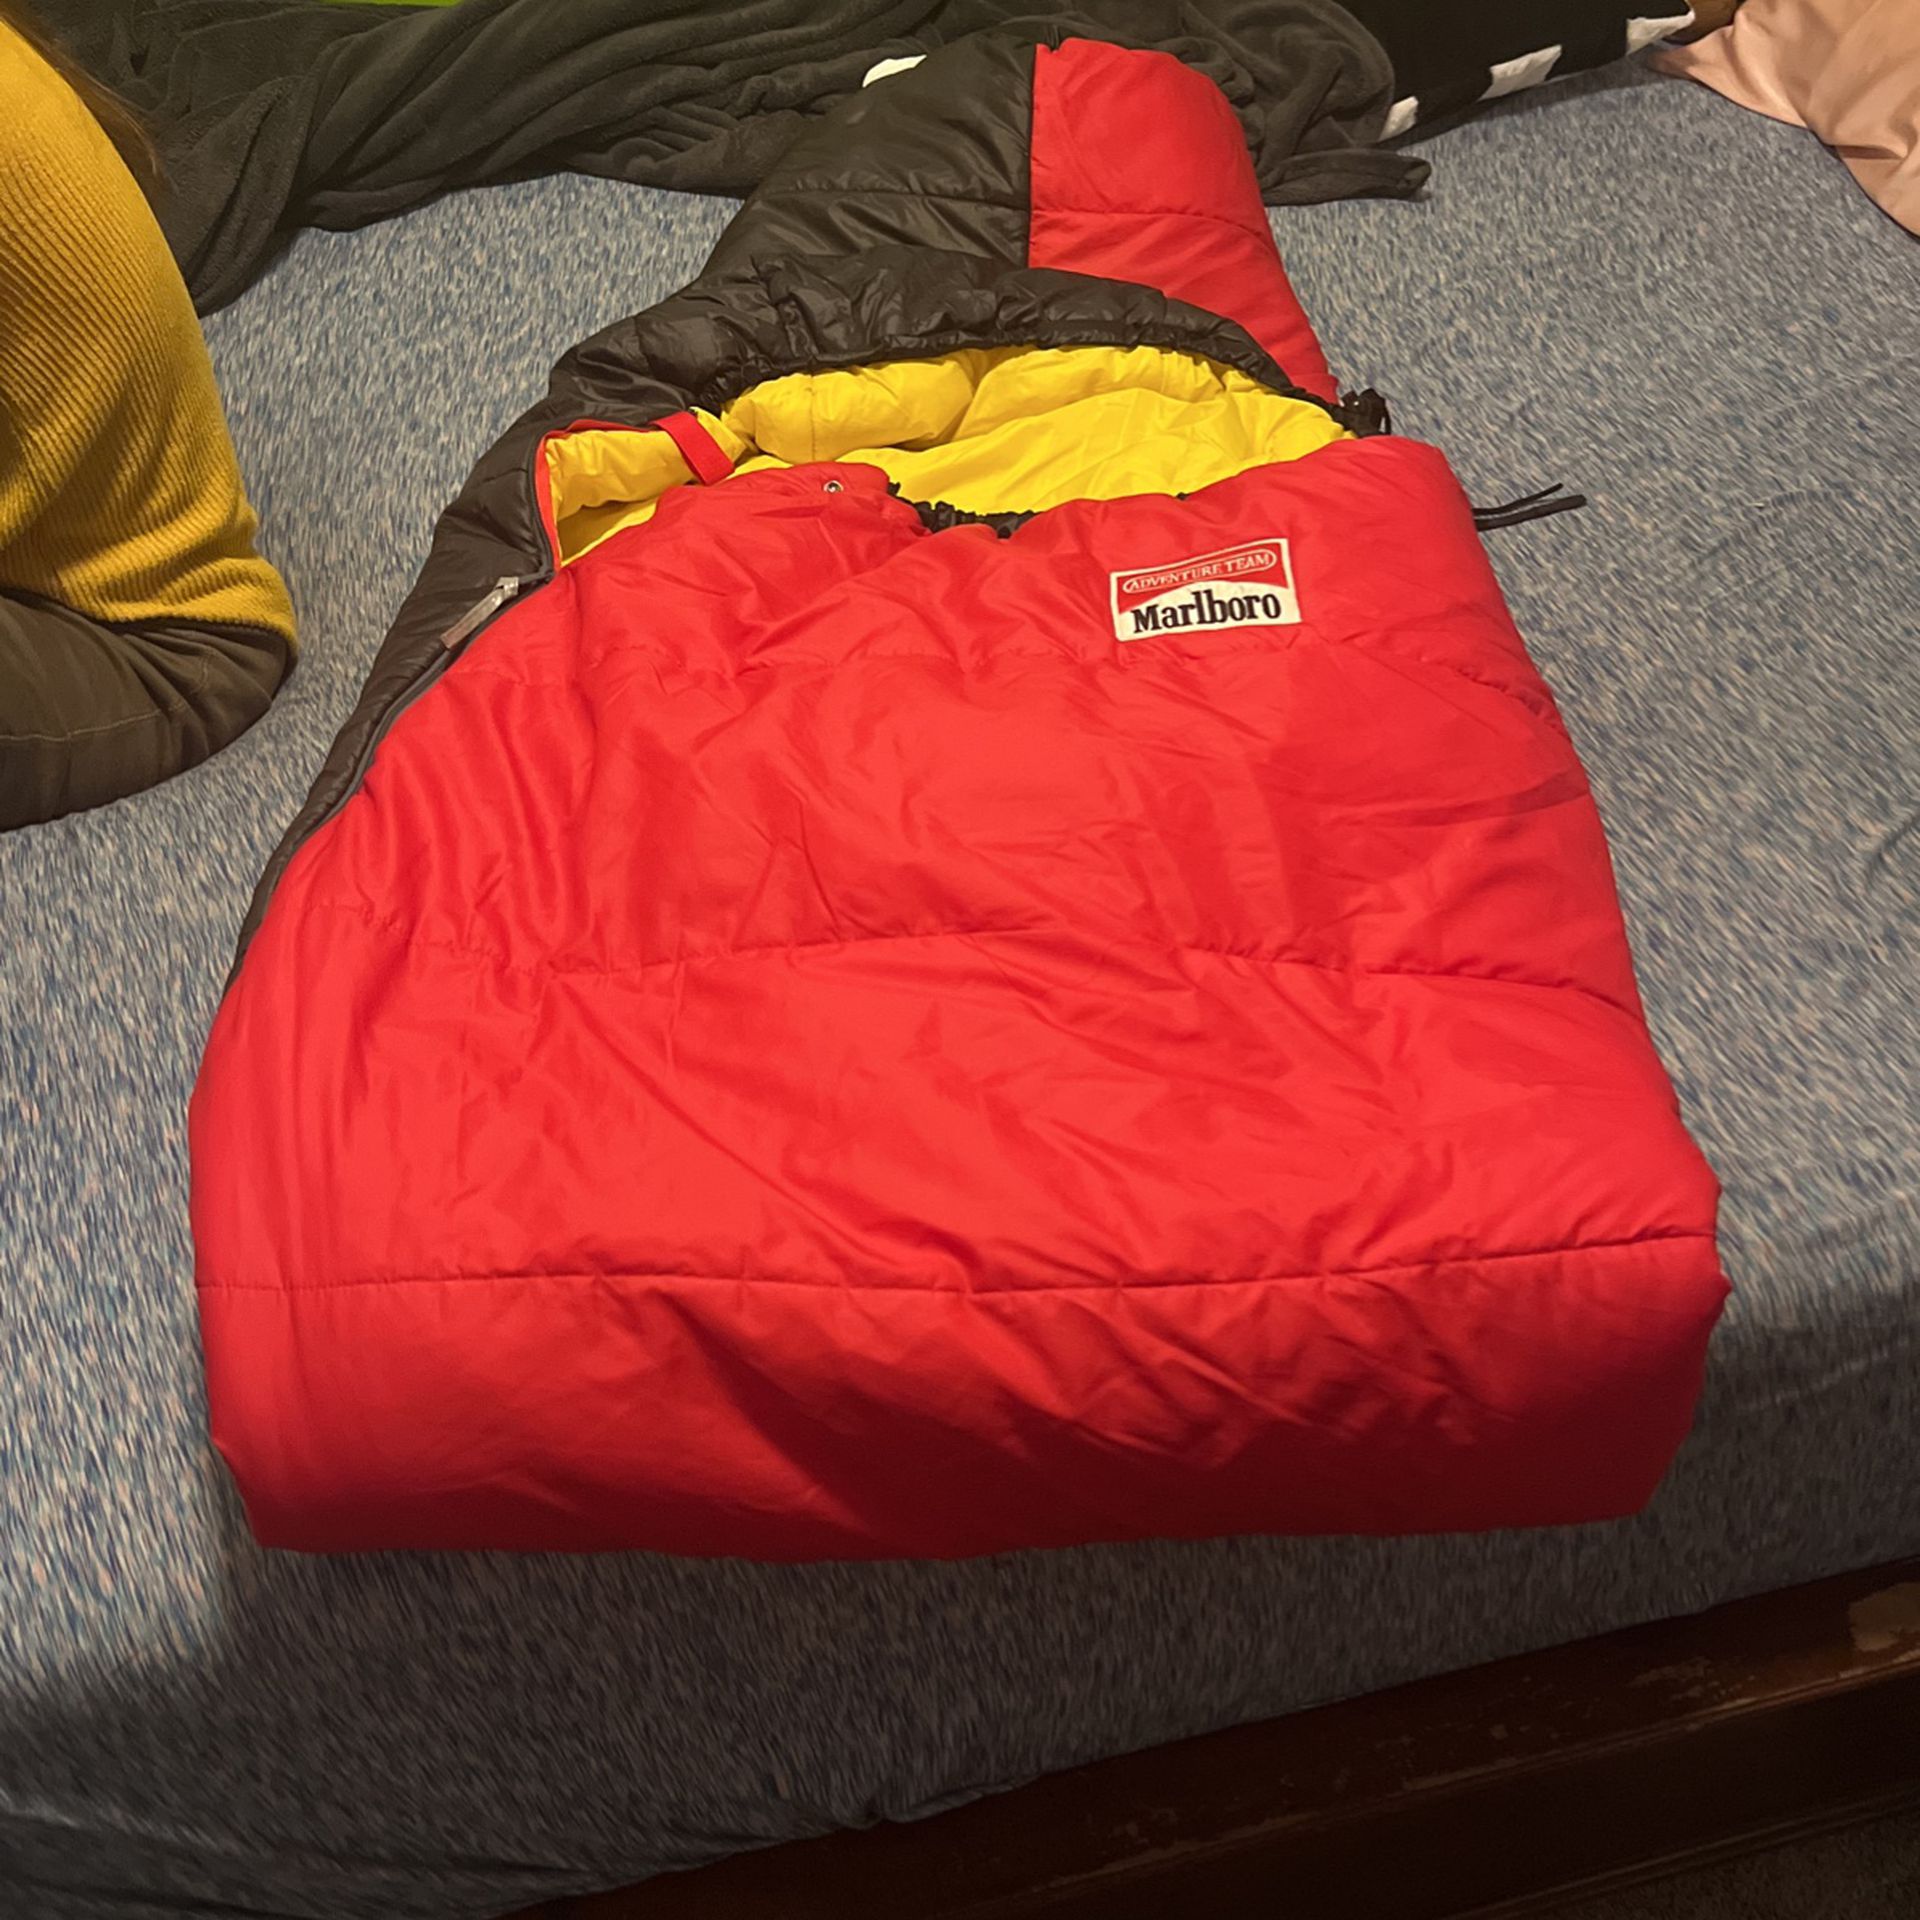 vintage marlboro sleeping bag